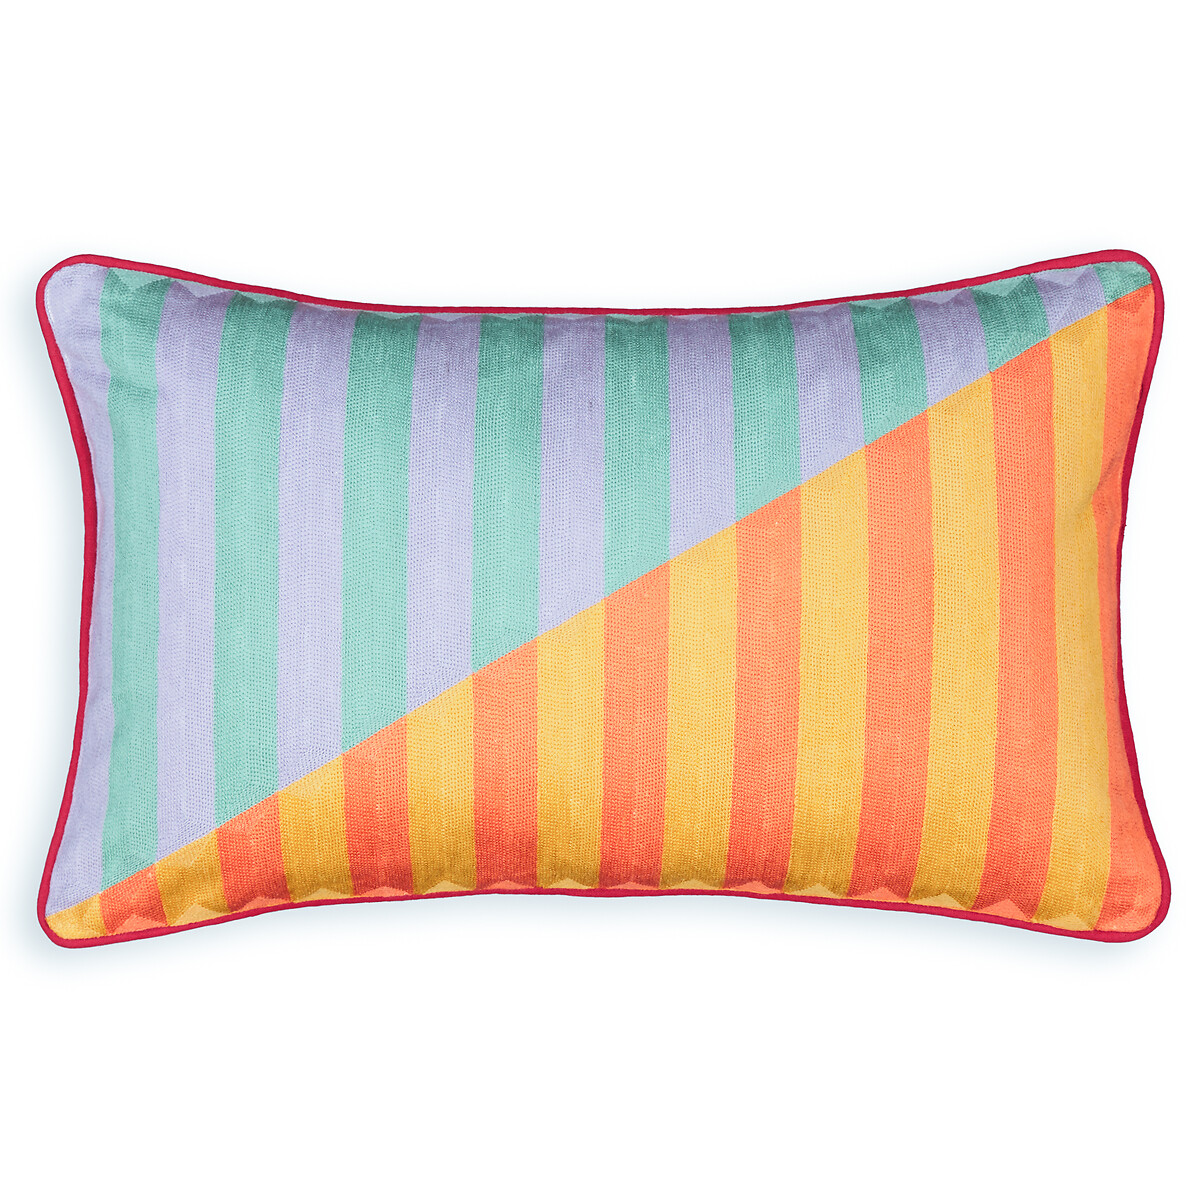 Чехол на подушку прямоугольный Dulang  50 x 30 см разноцветный LaRedoute, размер 50 x 30 см - фото 1